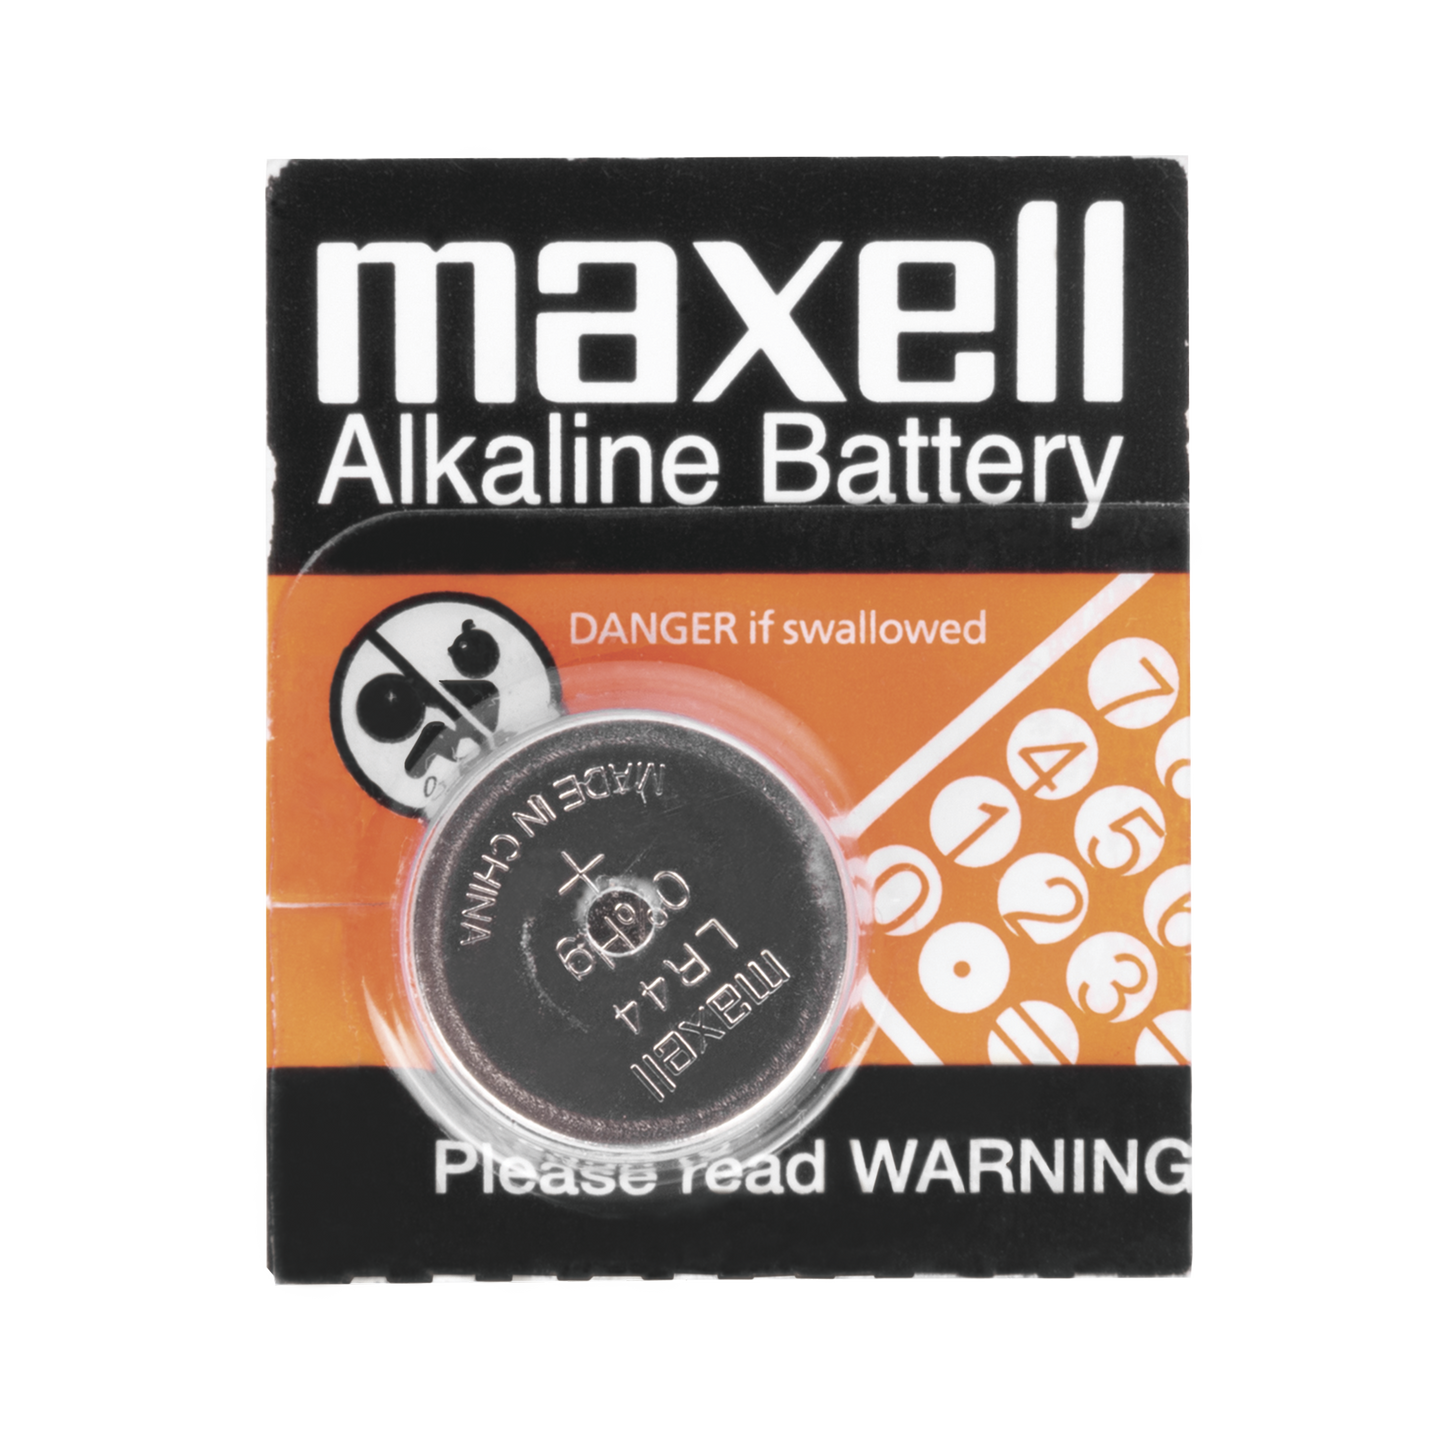 Batería Alcalina tipo botón de 1.5 V 110 mAh